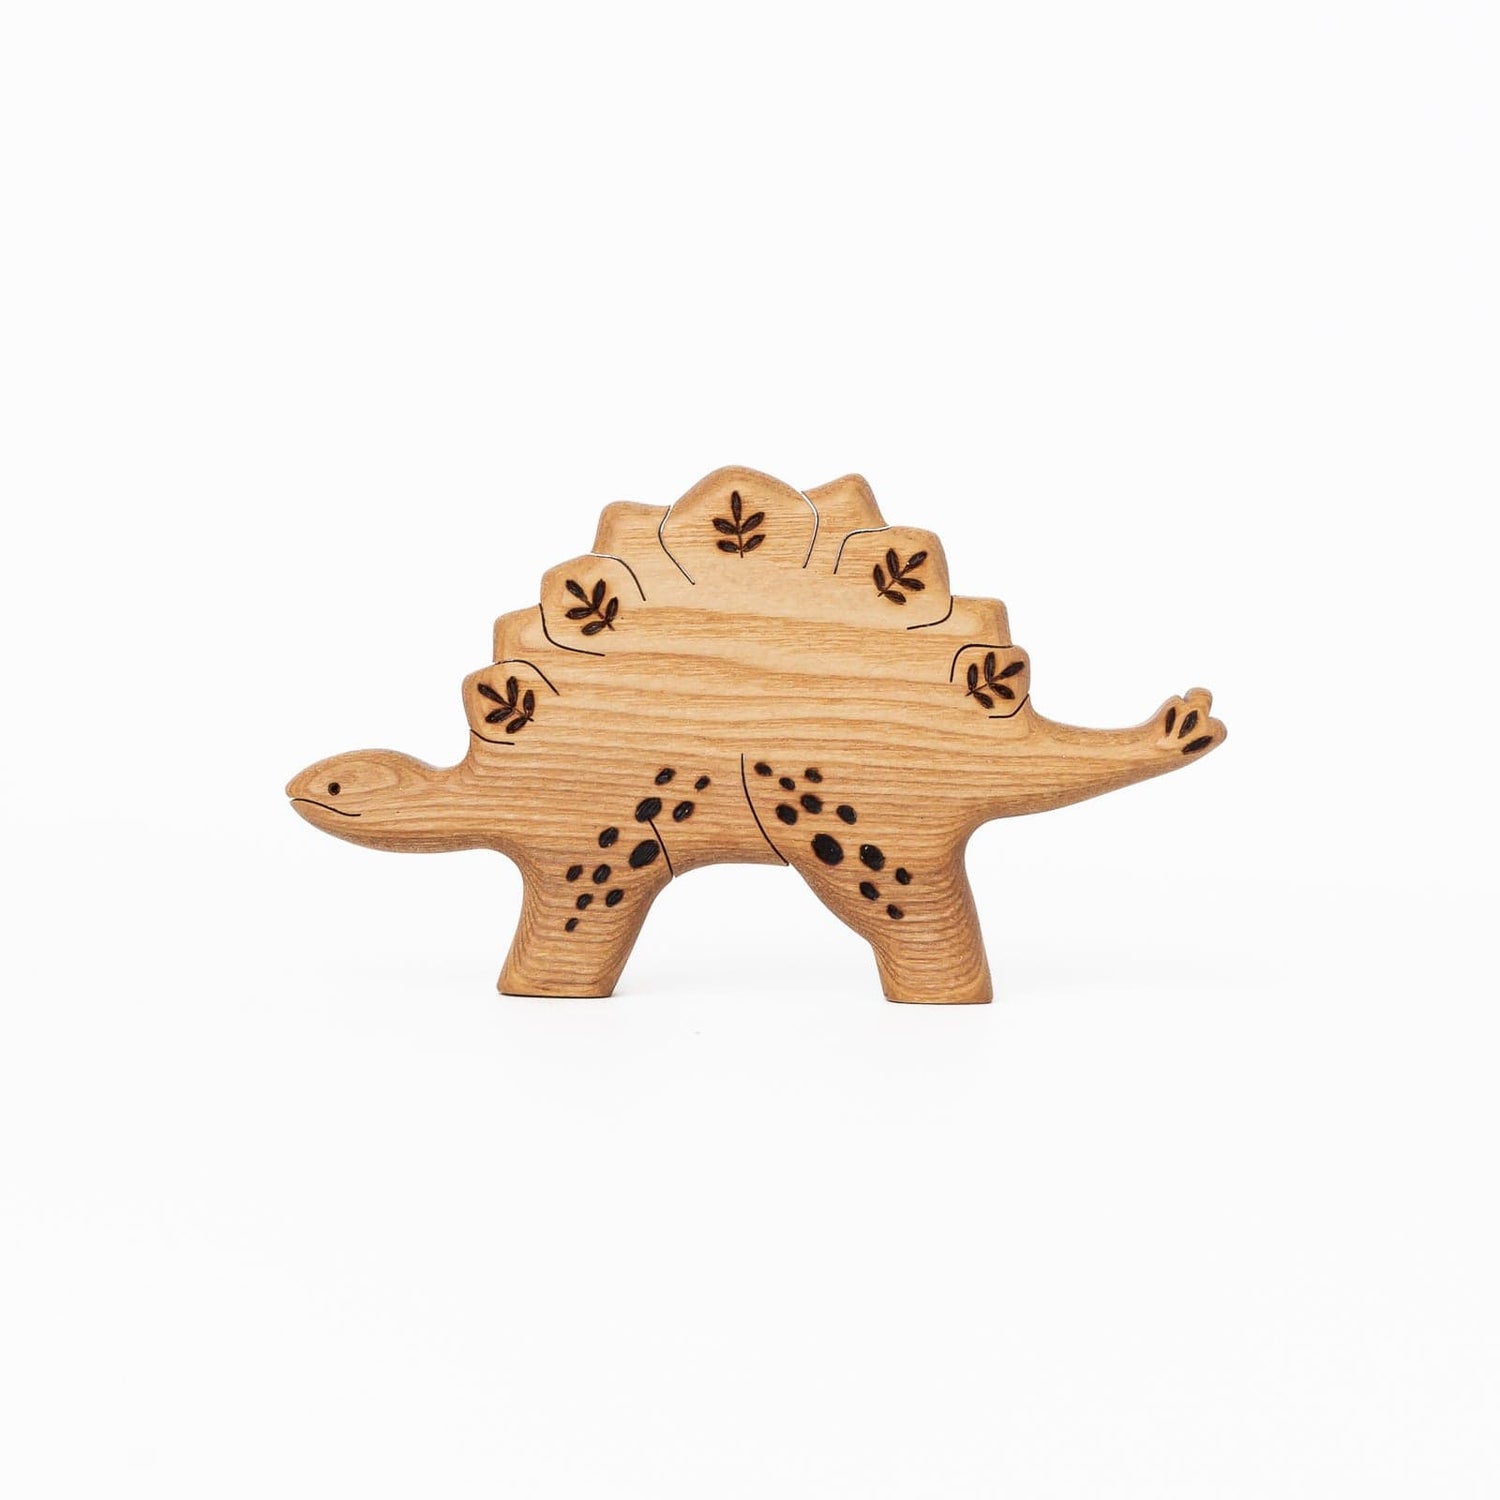 Tiny Fox Hole Wooden Animals Handmade Wooden Stegosaurus Toy